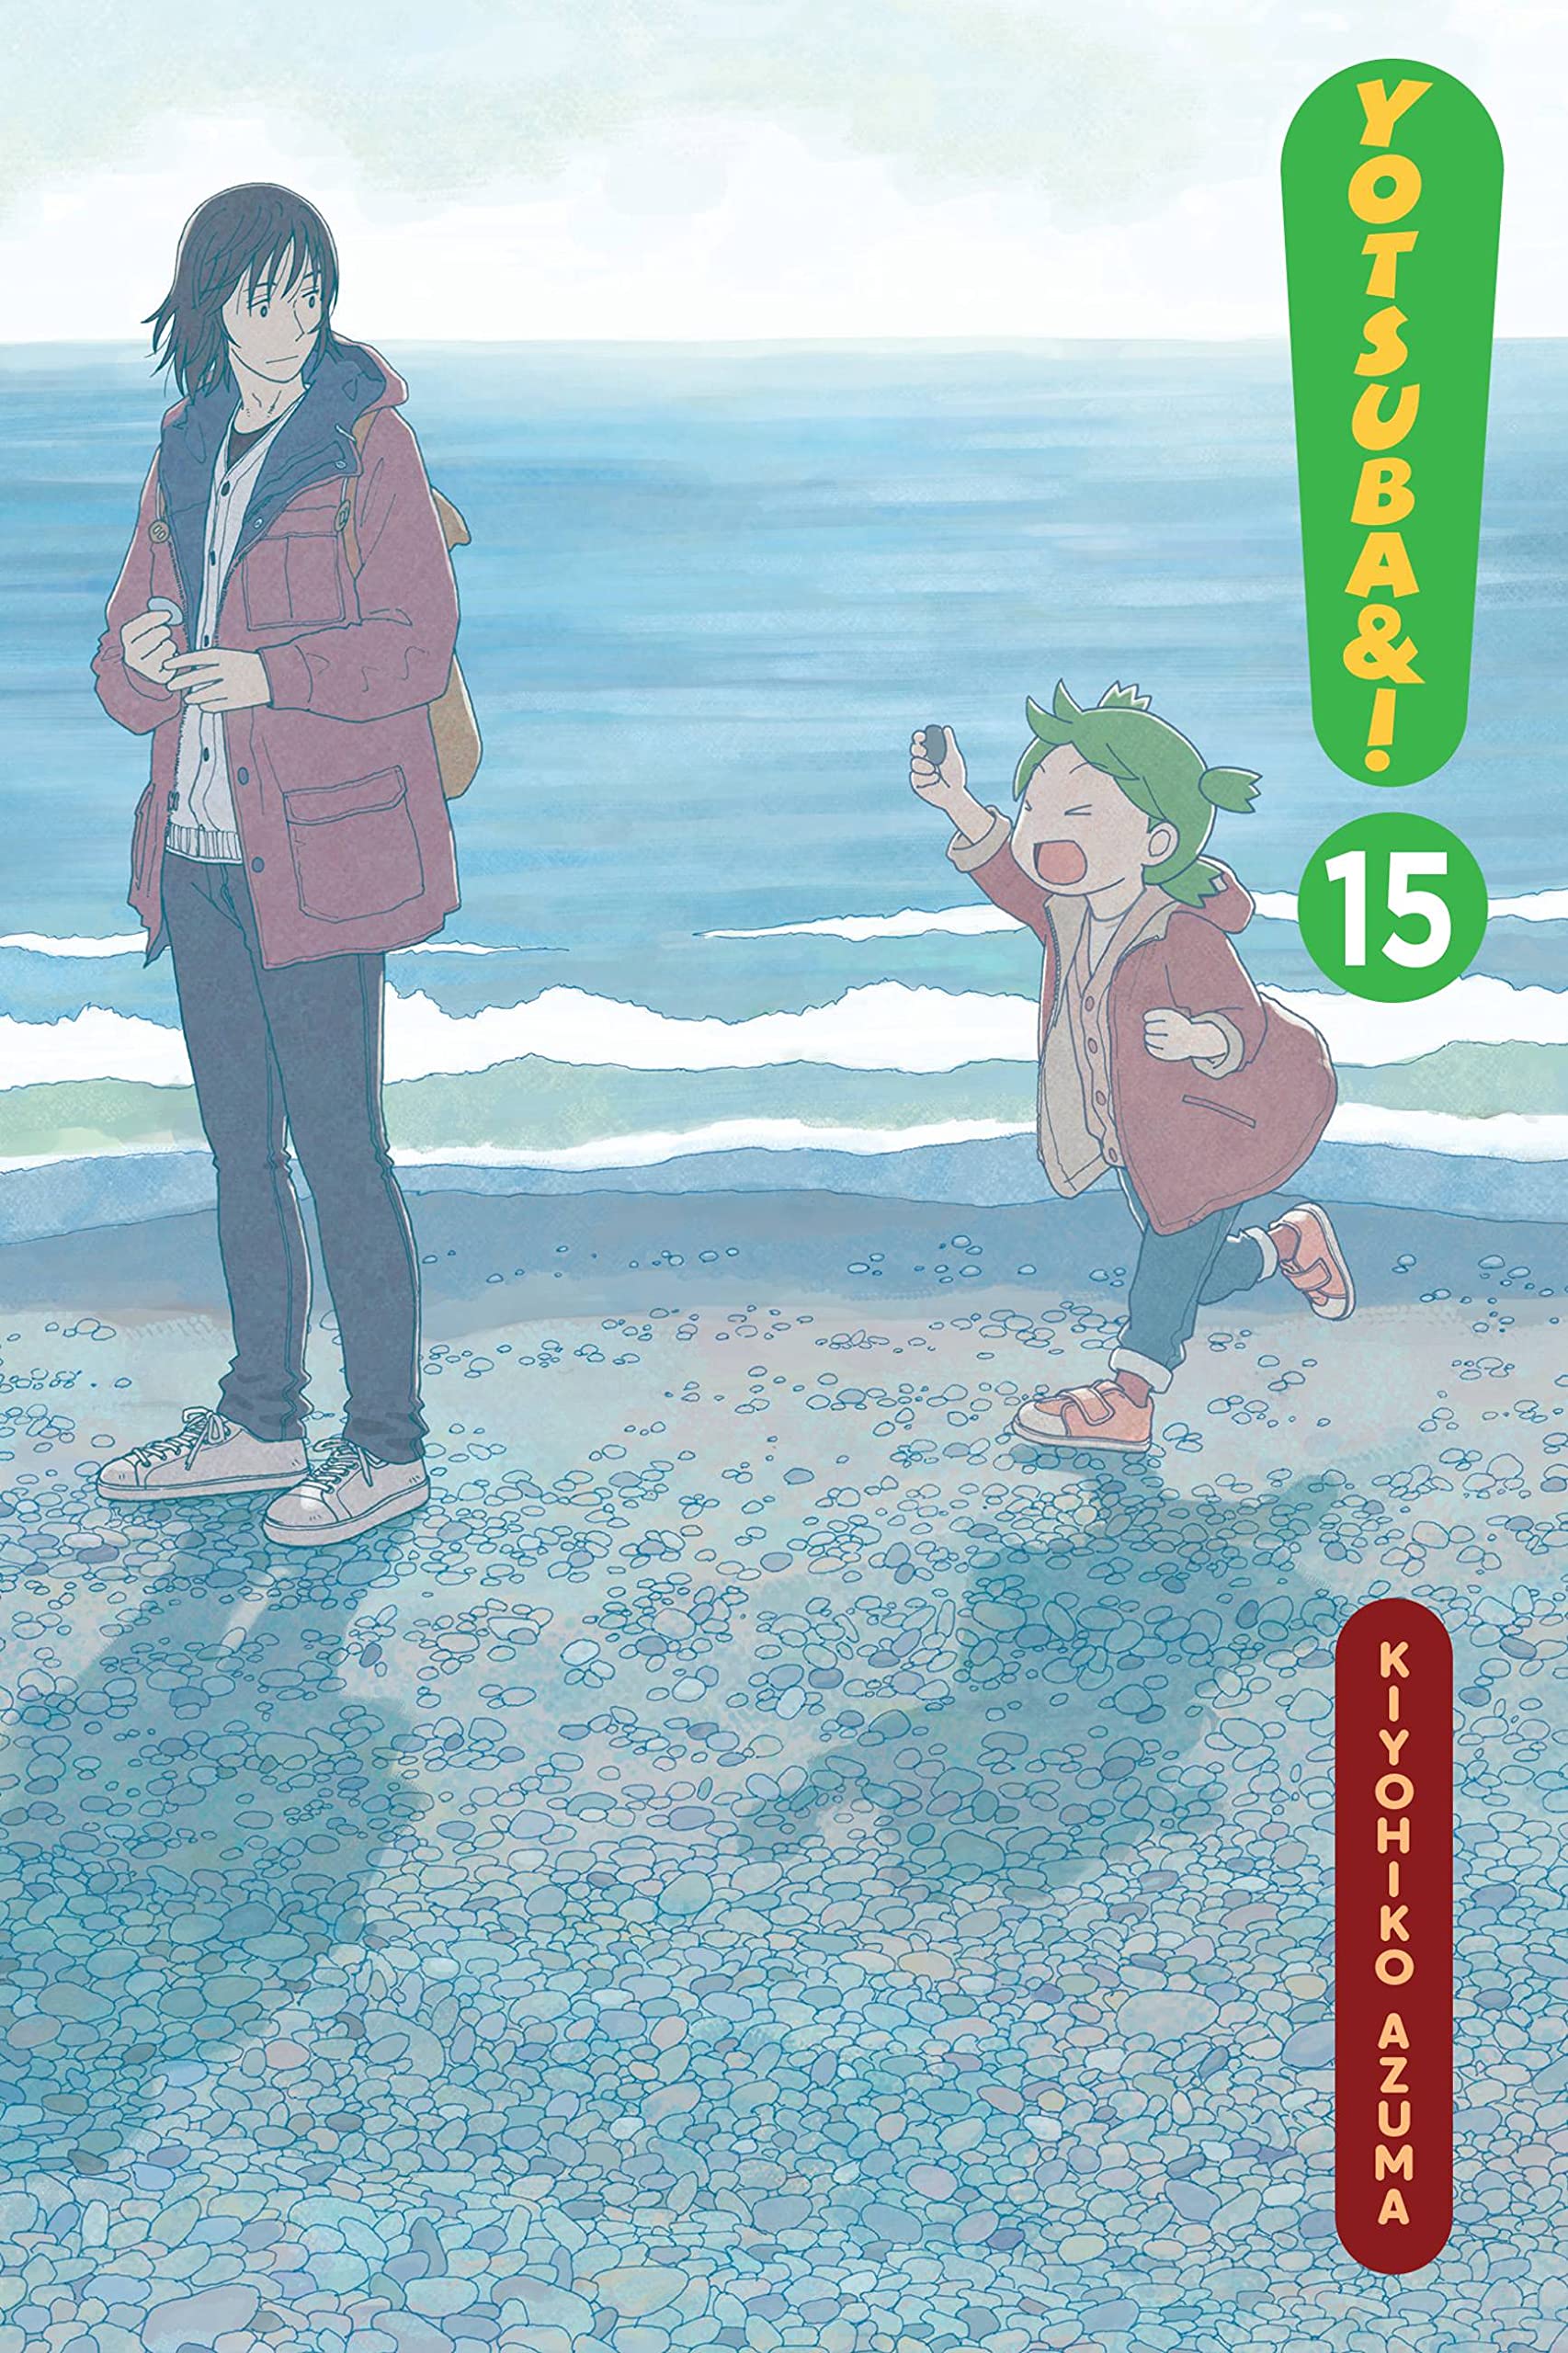 Yotsuba&! Vol. 15